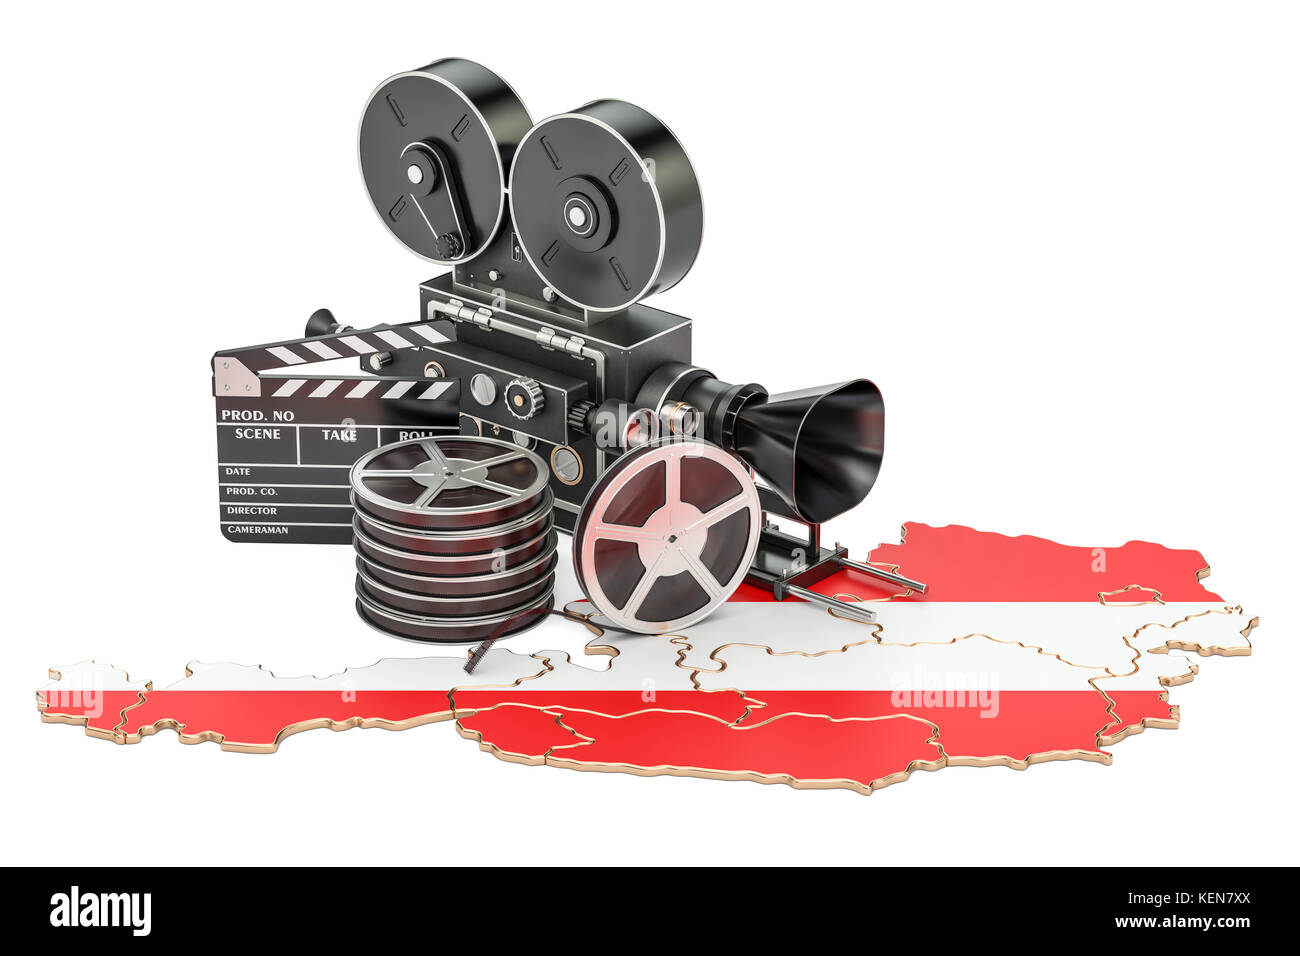 Österreichischen Kinematographie, Filmindustrie Konzept. 3D-Rendering auf weißem Hintergrund Stockfoto